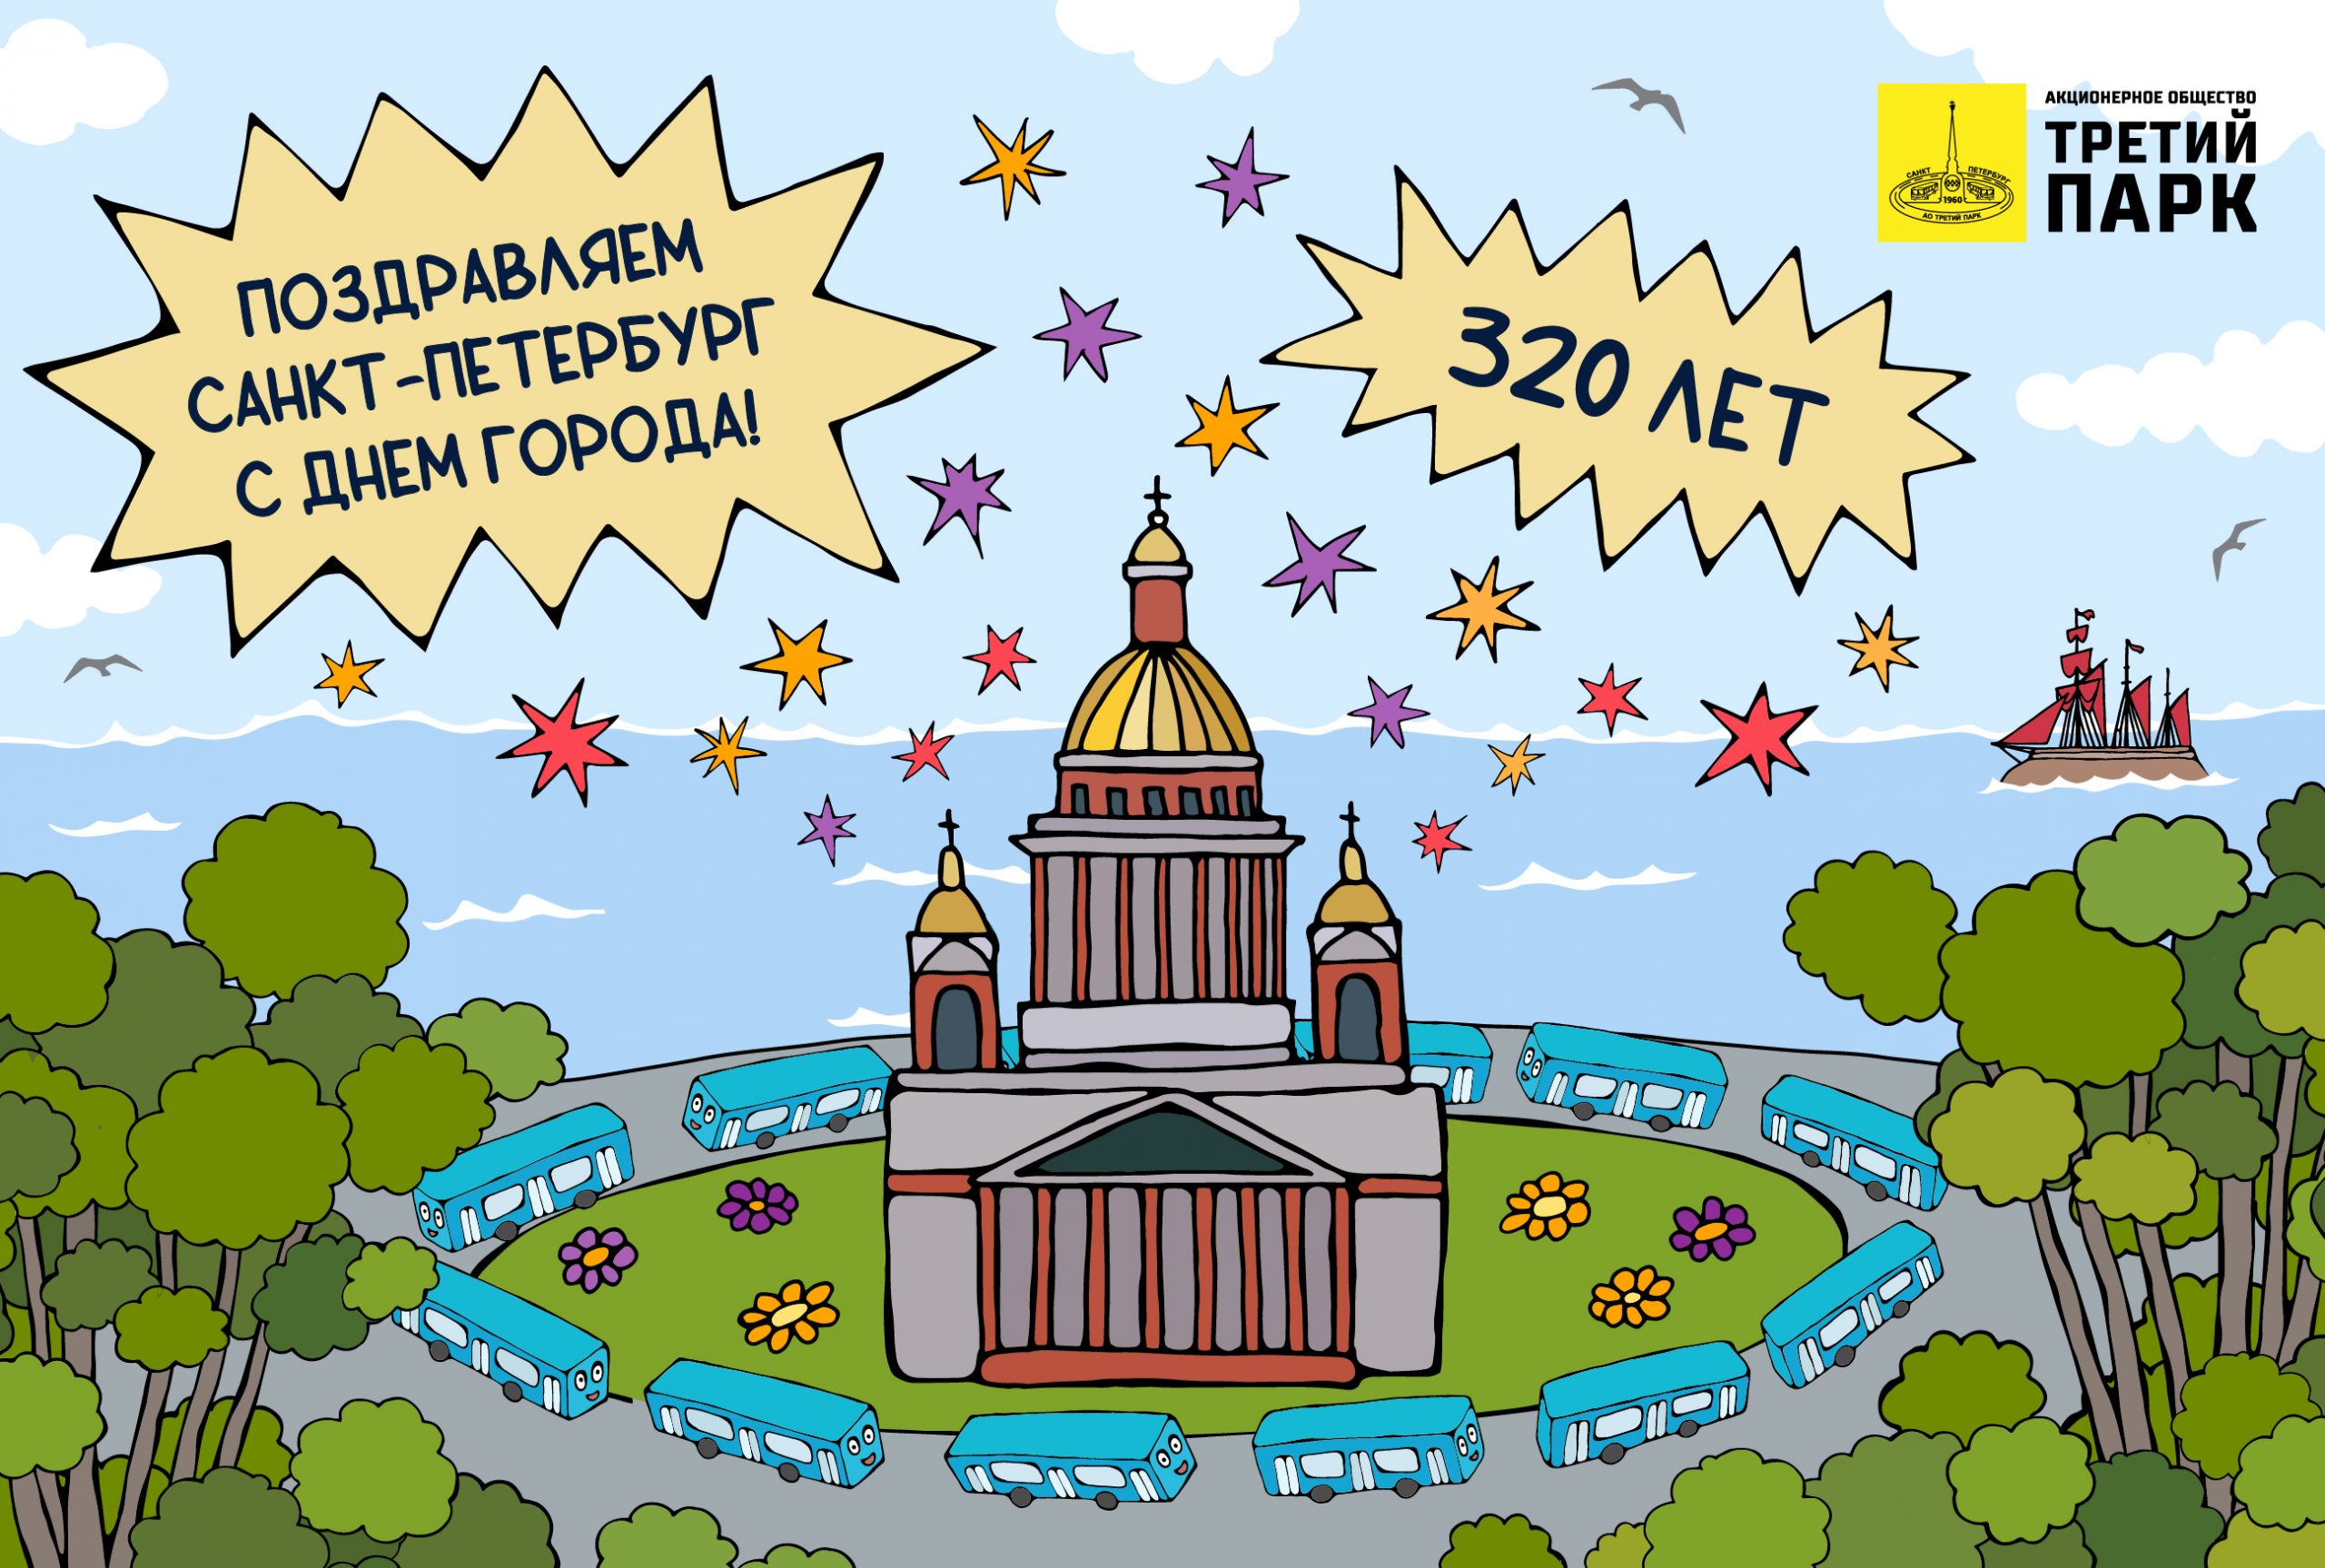 Коллектив АО «Третий парк» поздравляет всех жителей и гостей Санкт-Петербурга с Днём города!